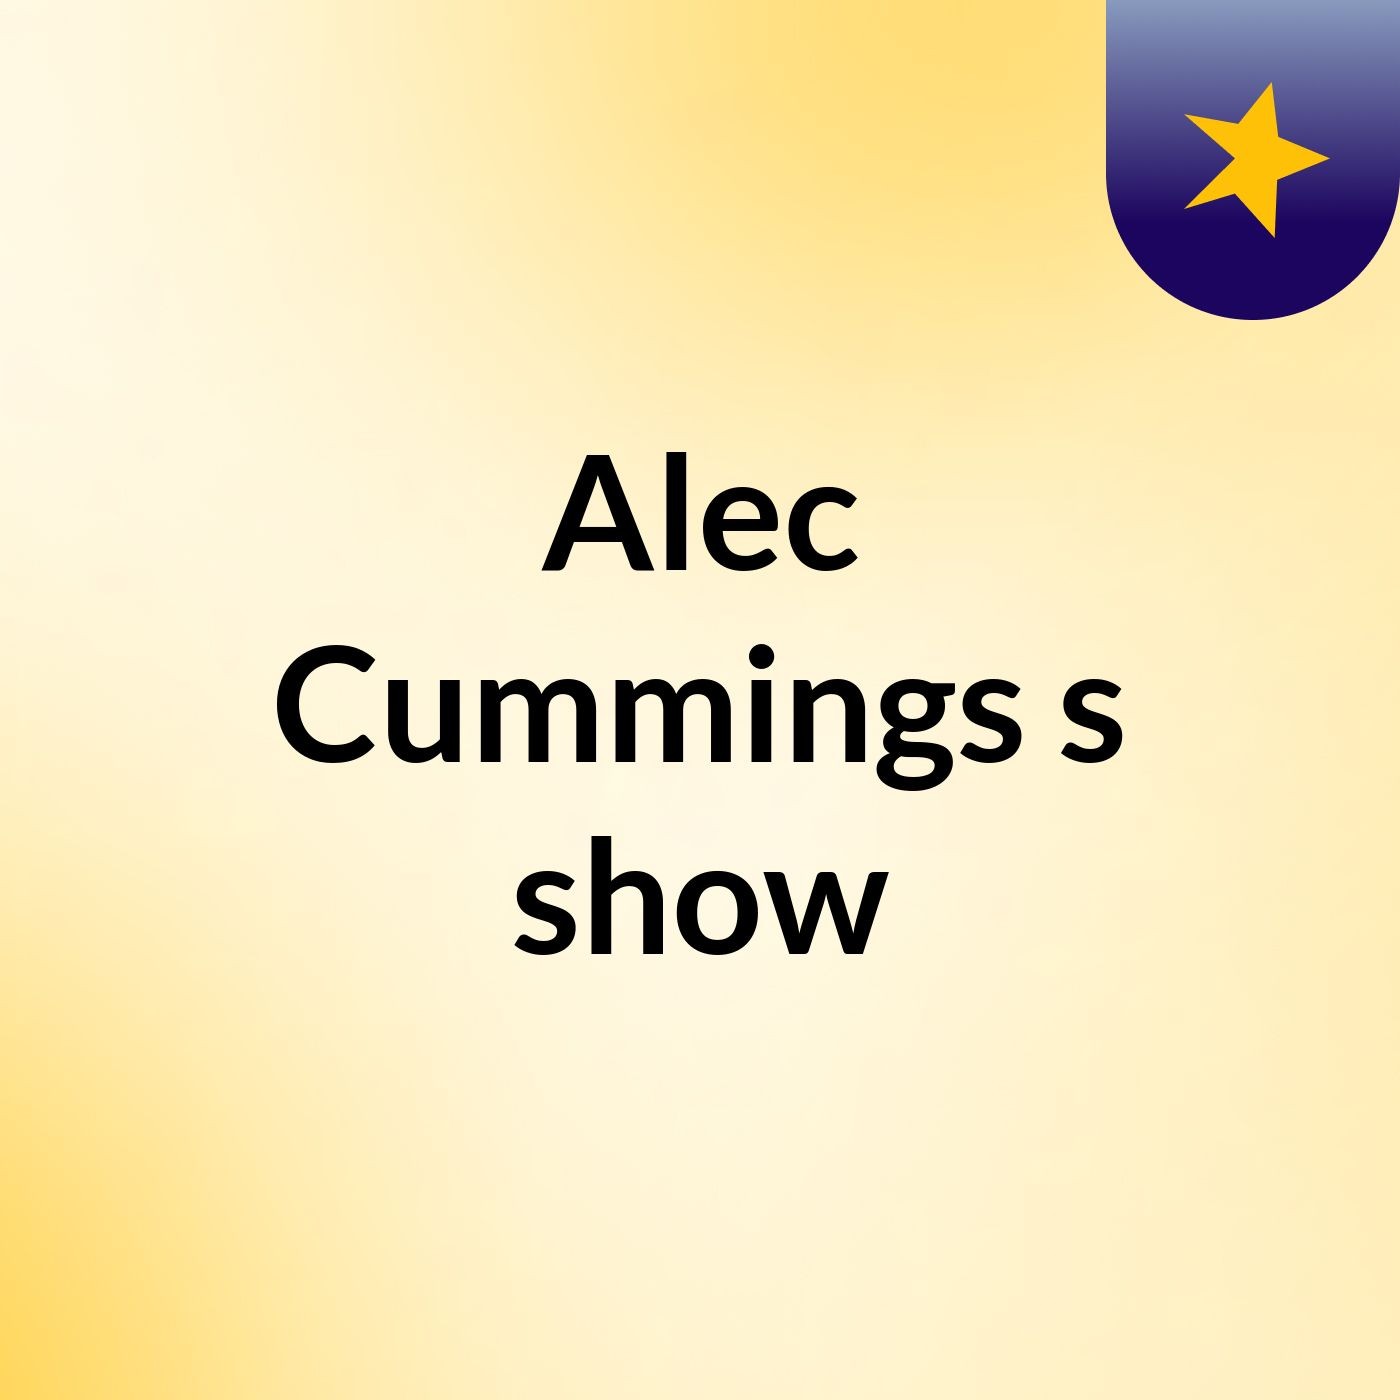 Alec Cummings's show